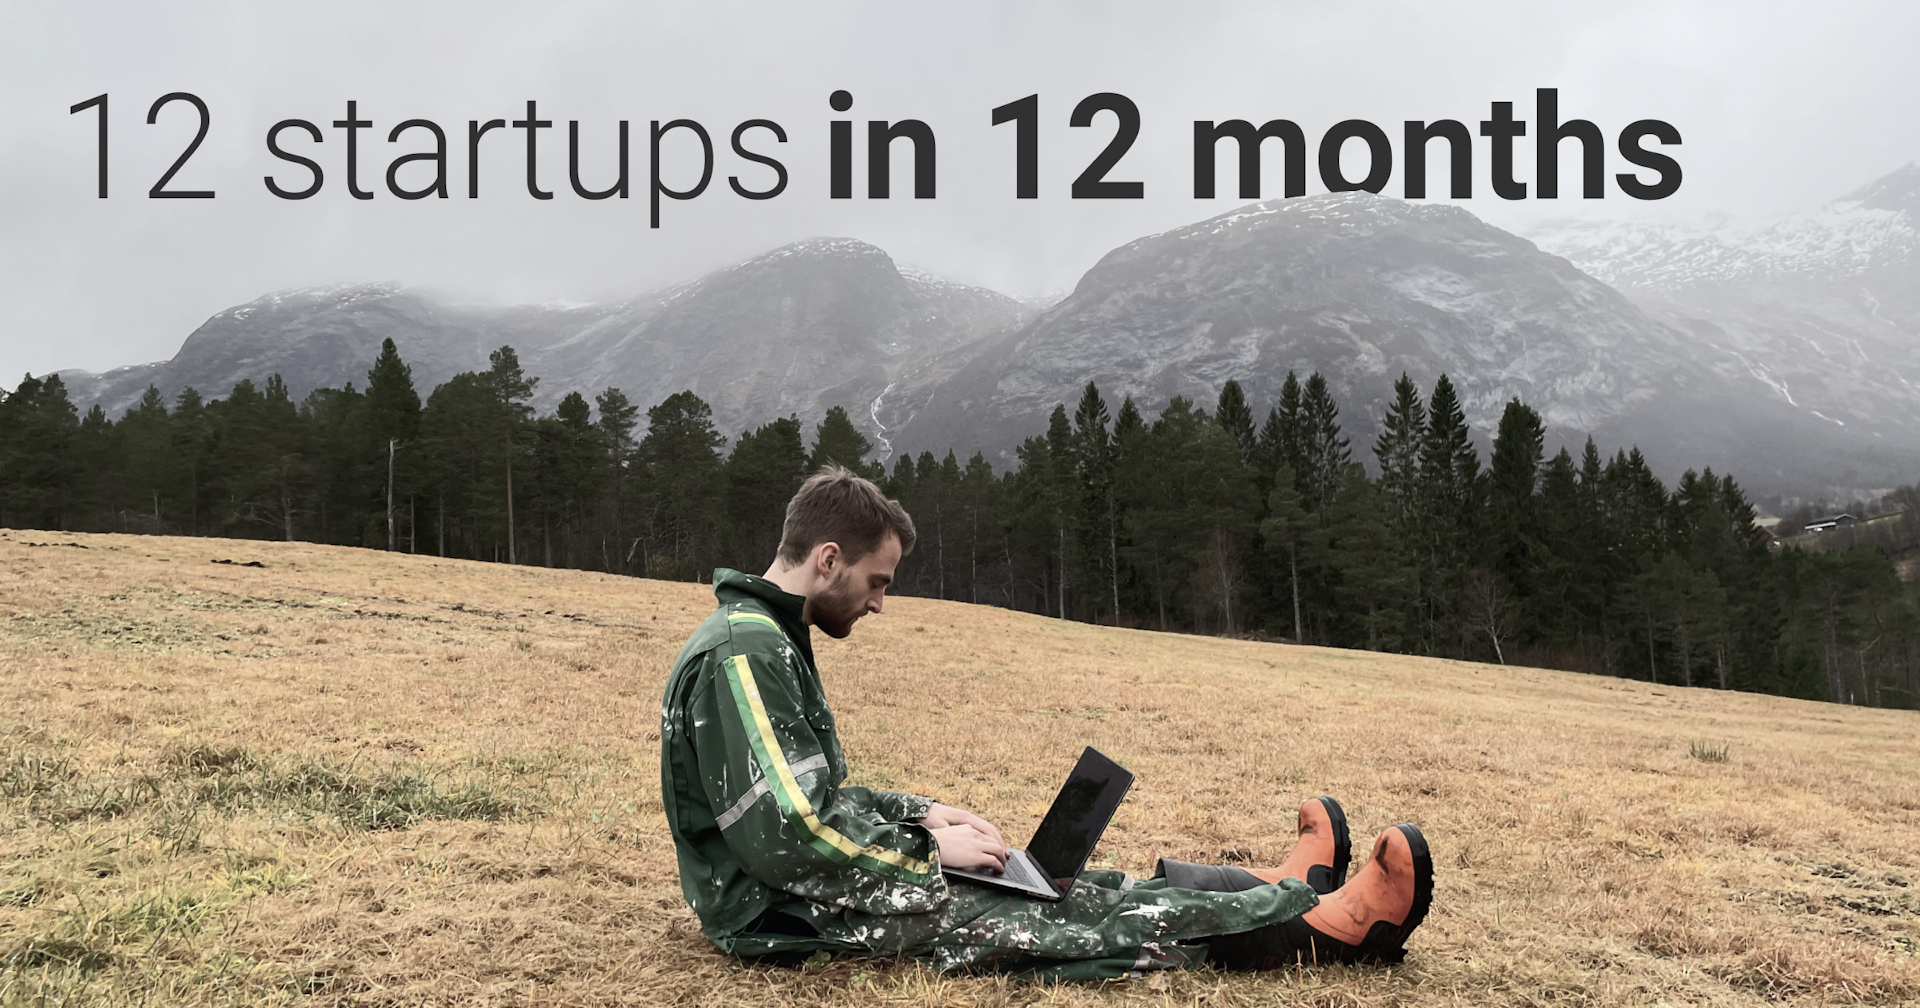 12 startups in 12 months